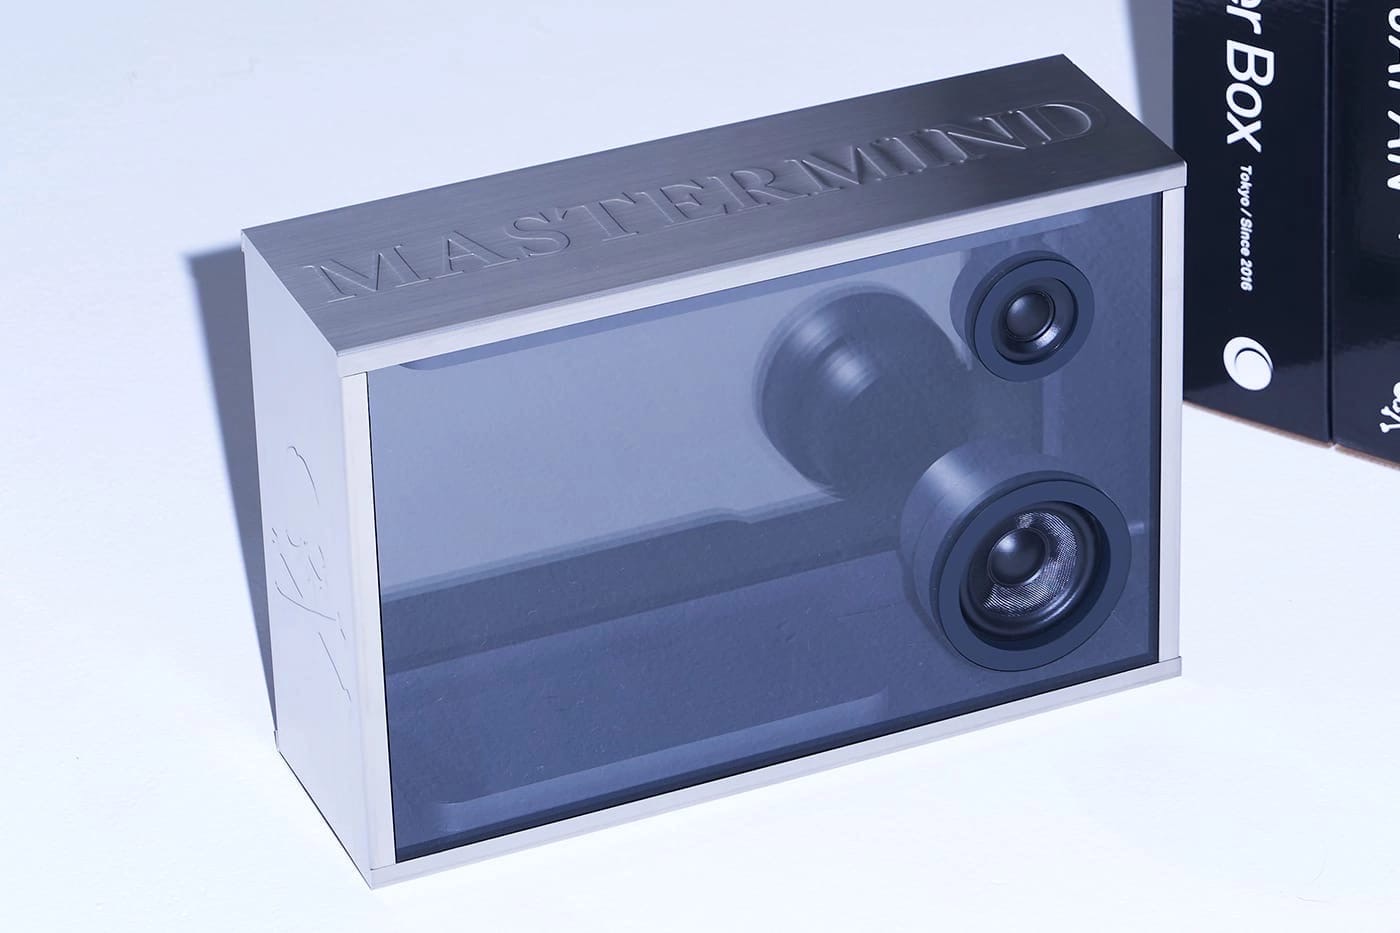 Компания COTODAMA совместно с Mastermind представила интересную колонку Lyric Speaker Box.